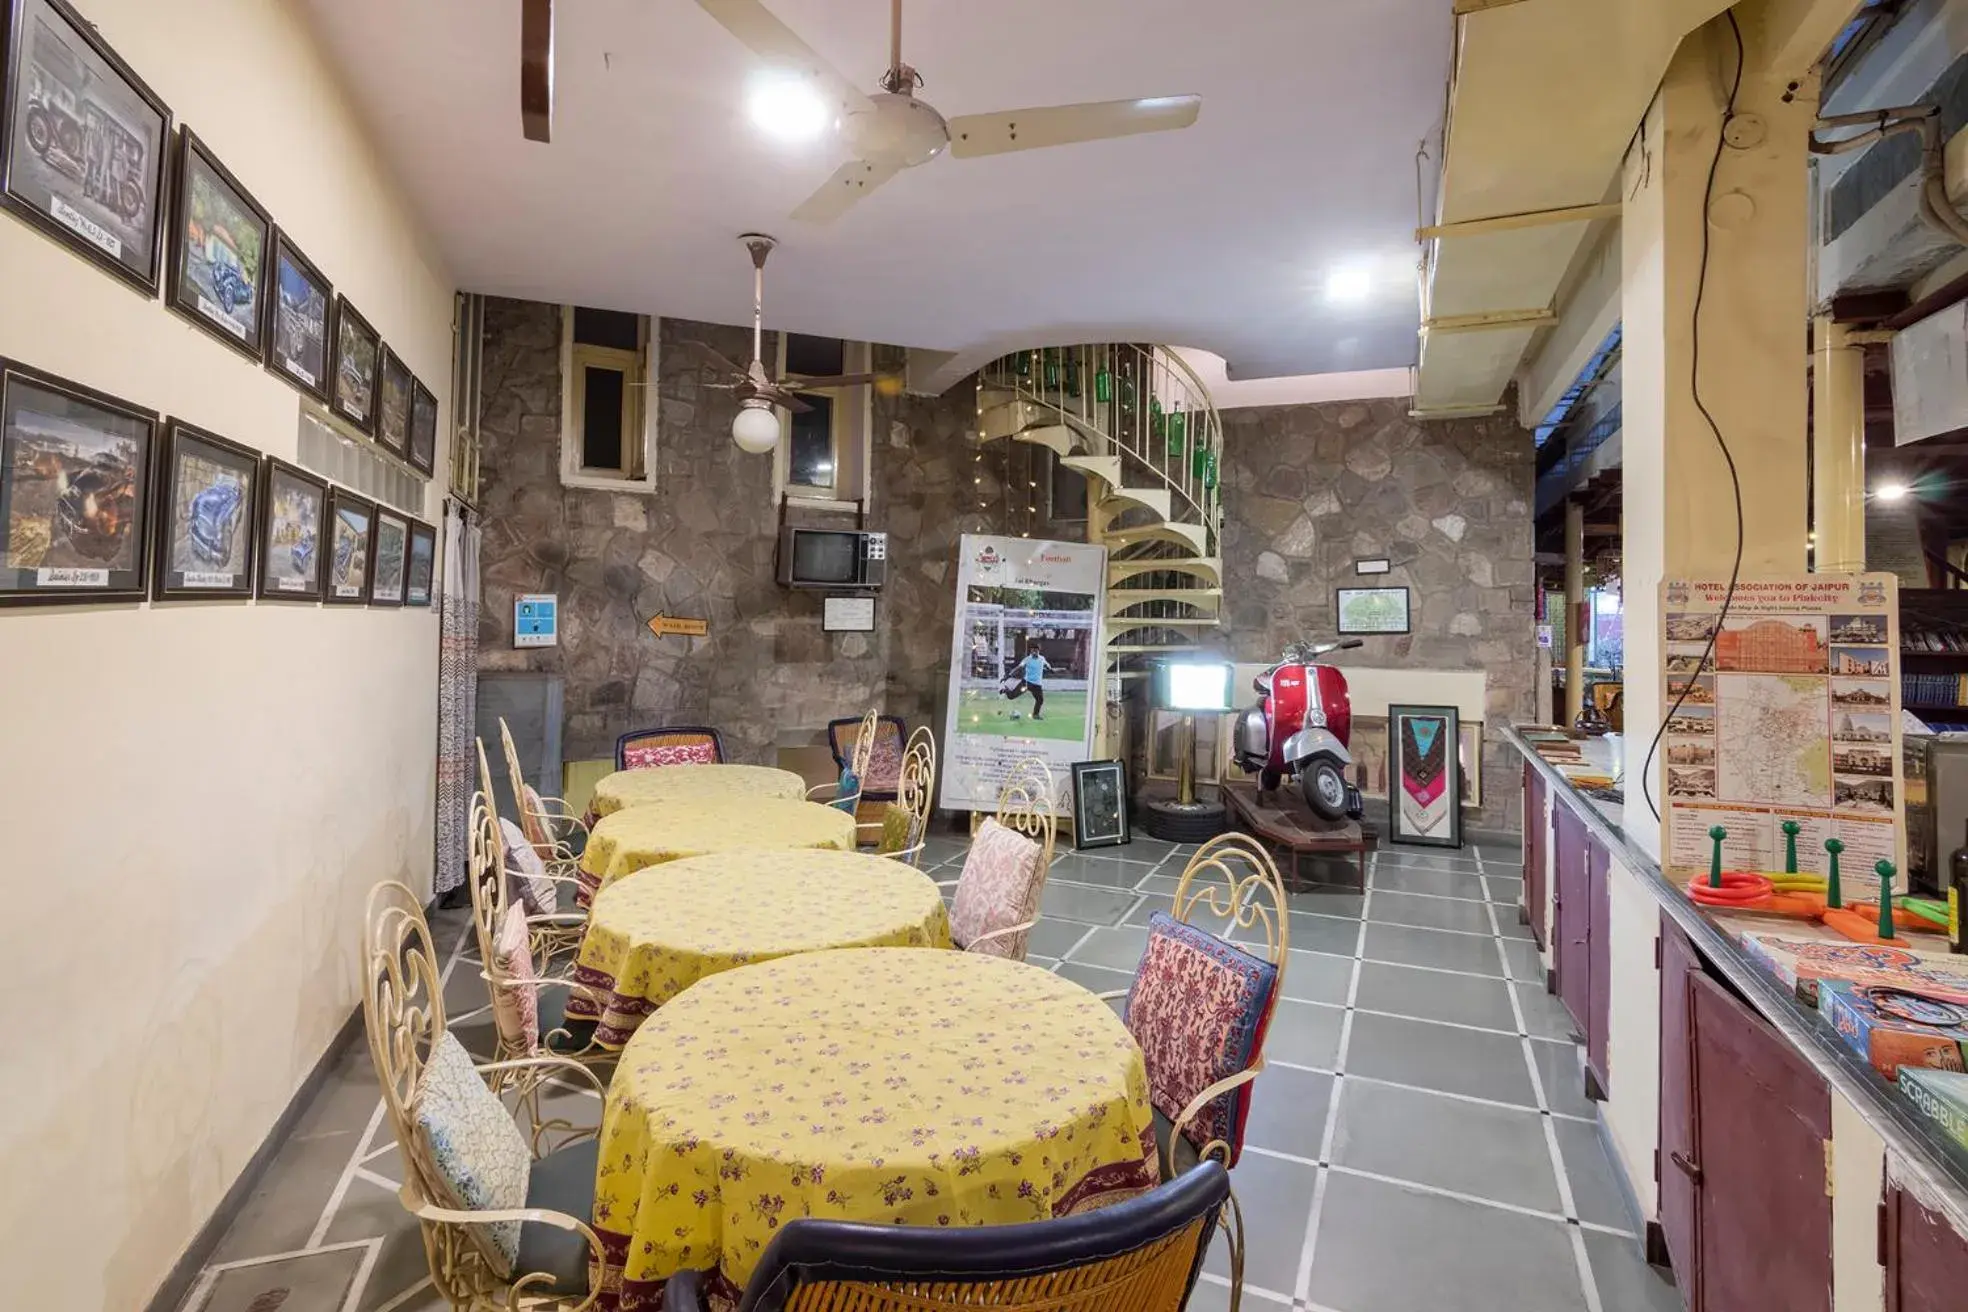 Restaurant/places to eat in Jaipur Inn